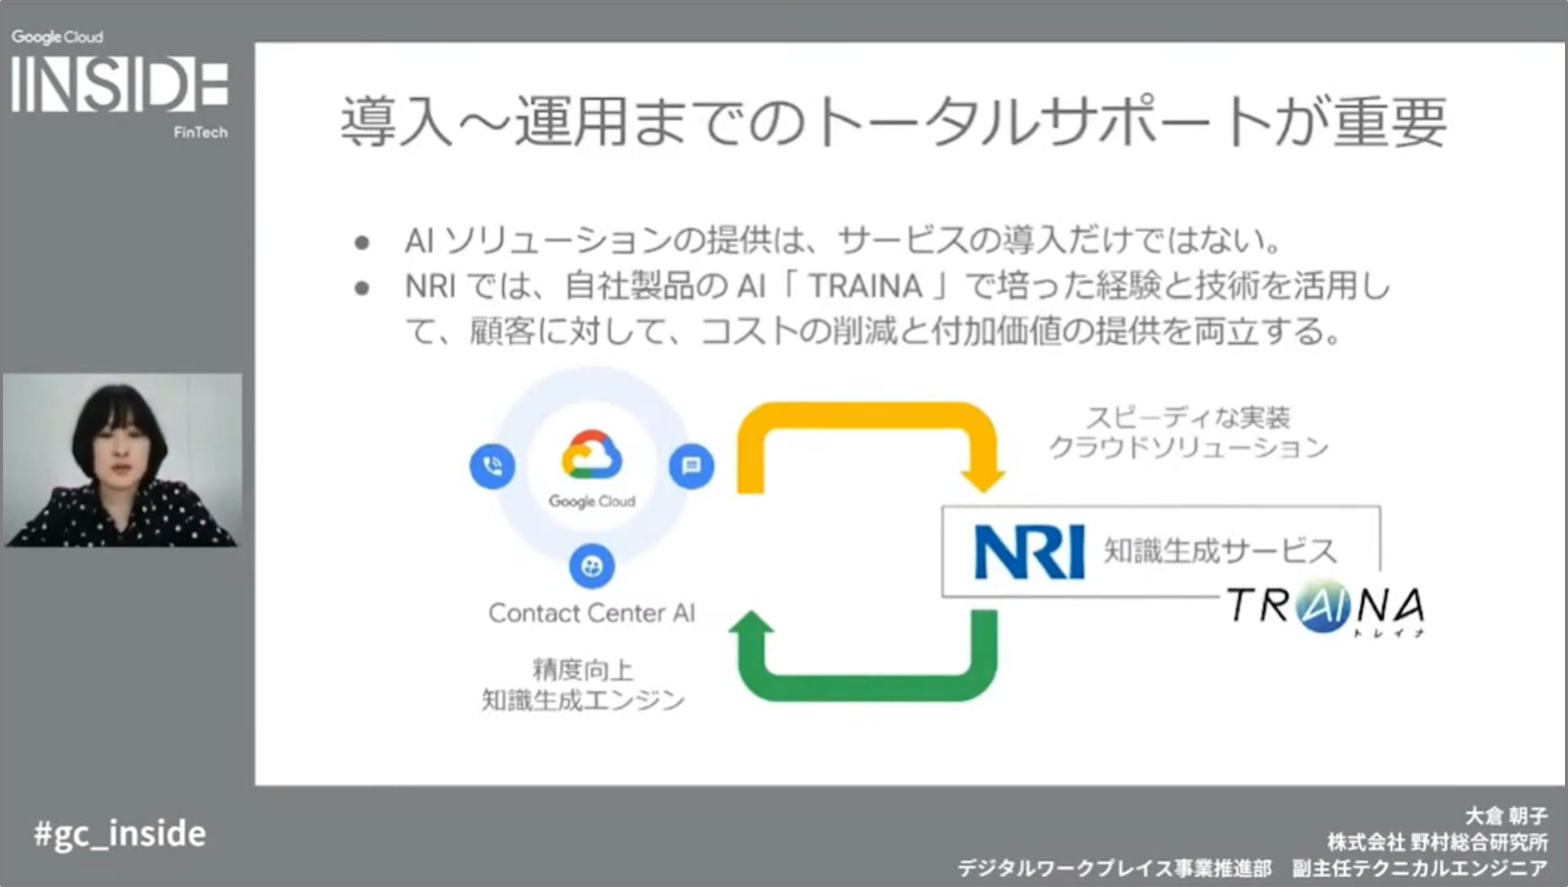 「第3回 Google Cloud INSIDE FinTech」で、NRI社員の大倉朝子が登壇